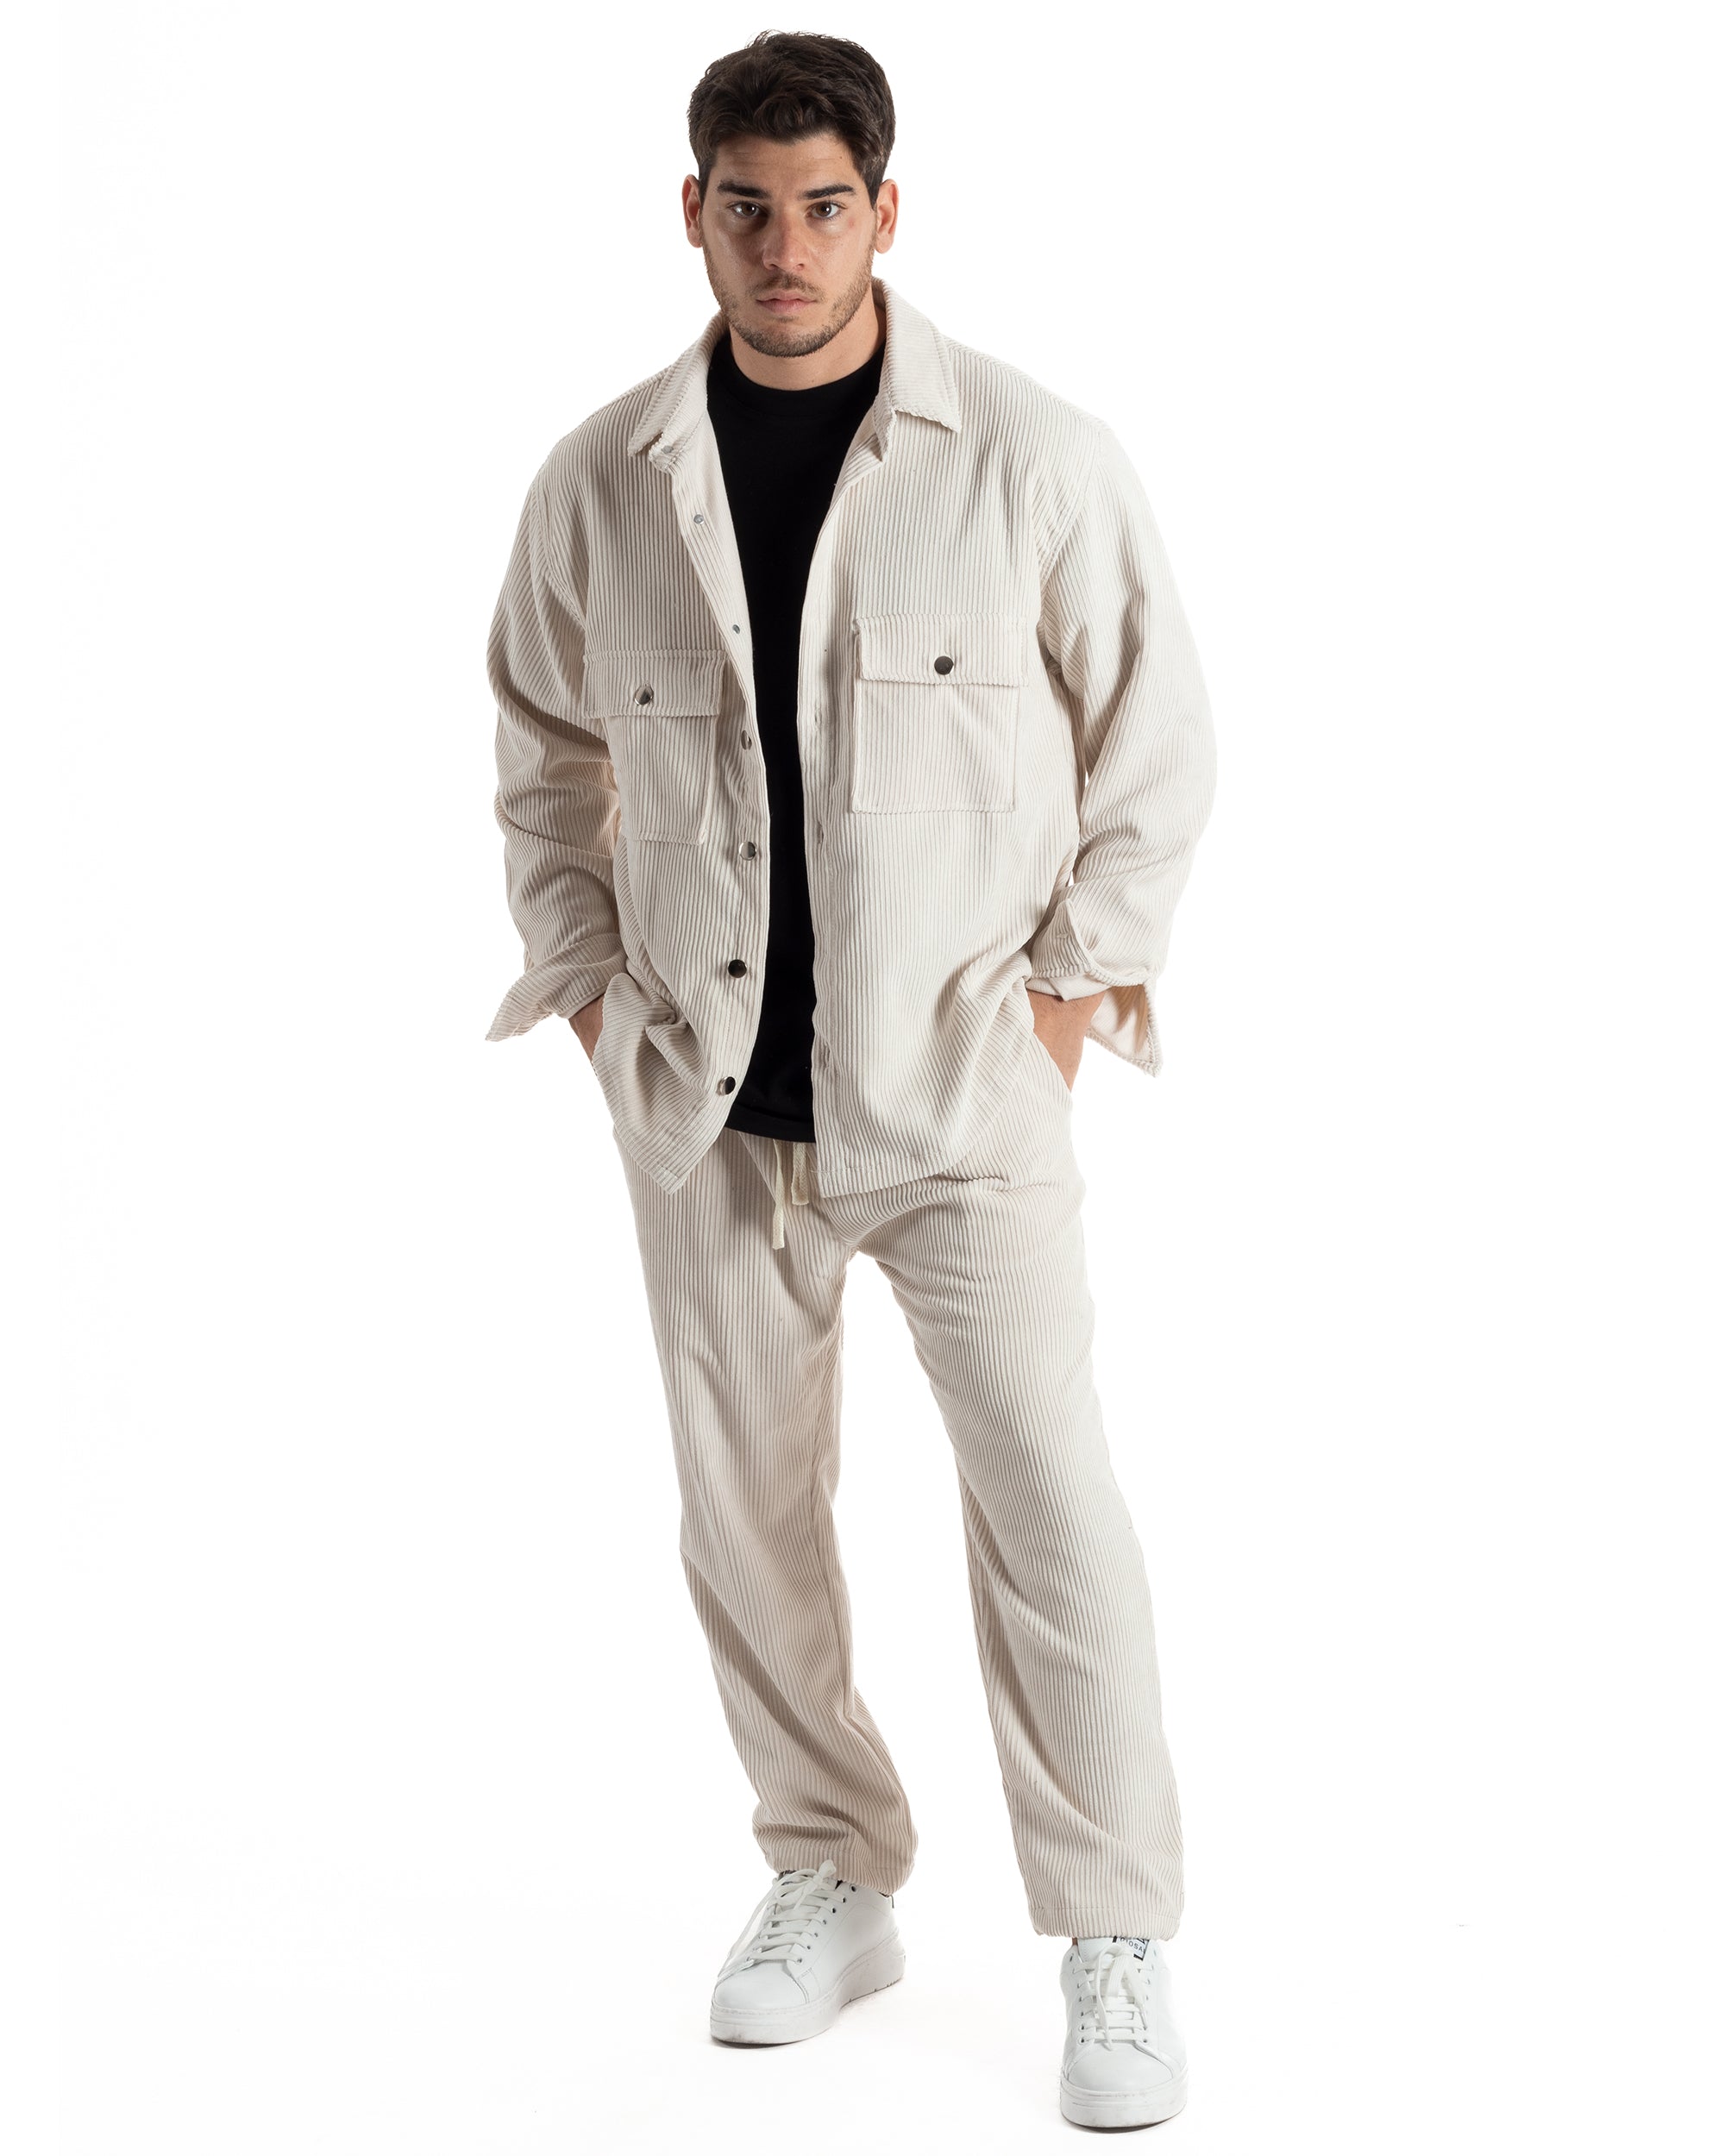 Completo Set Coordinato Uomo Velluto Costine Camicia Con Colletto Pantalaccio Outfit Panna GIOSAL-OU2435A